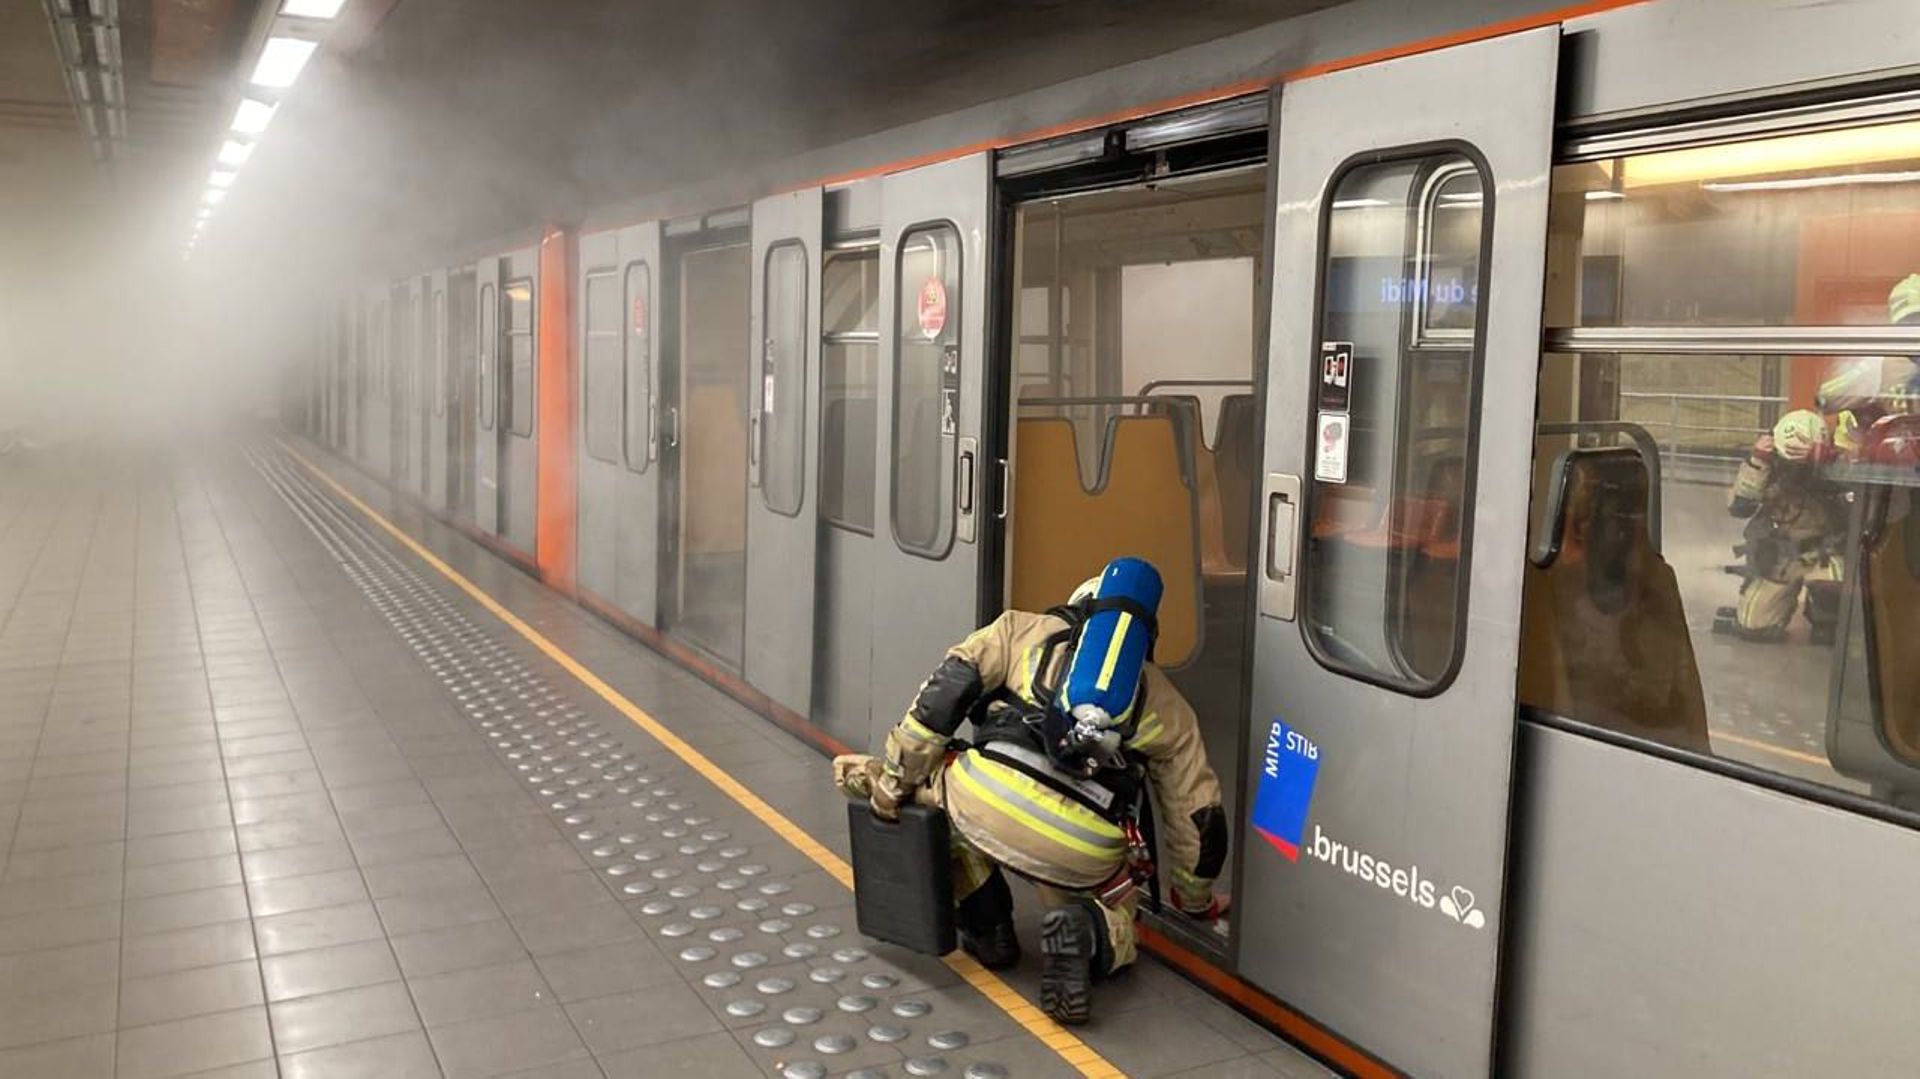 De la fumée s’échappant d’une rame de métro ce mercredi 8 mars dans la station de métro de la gare du midi.